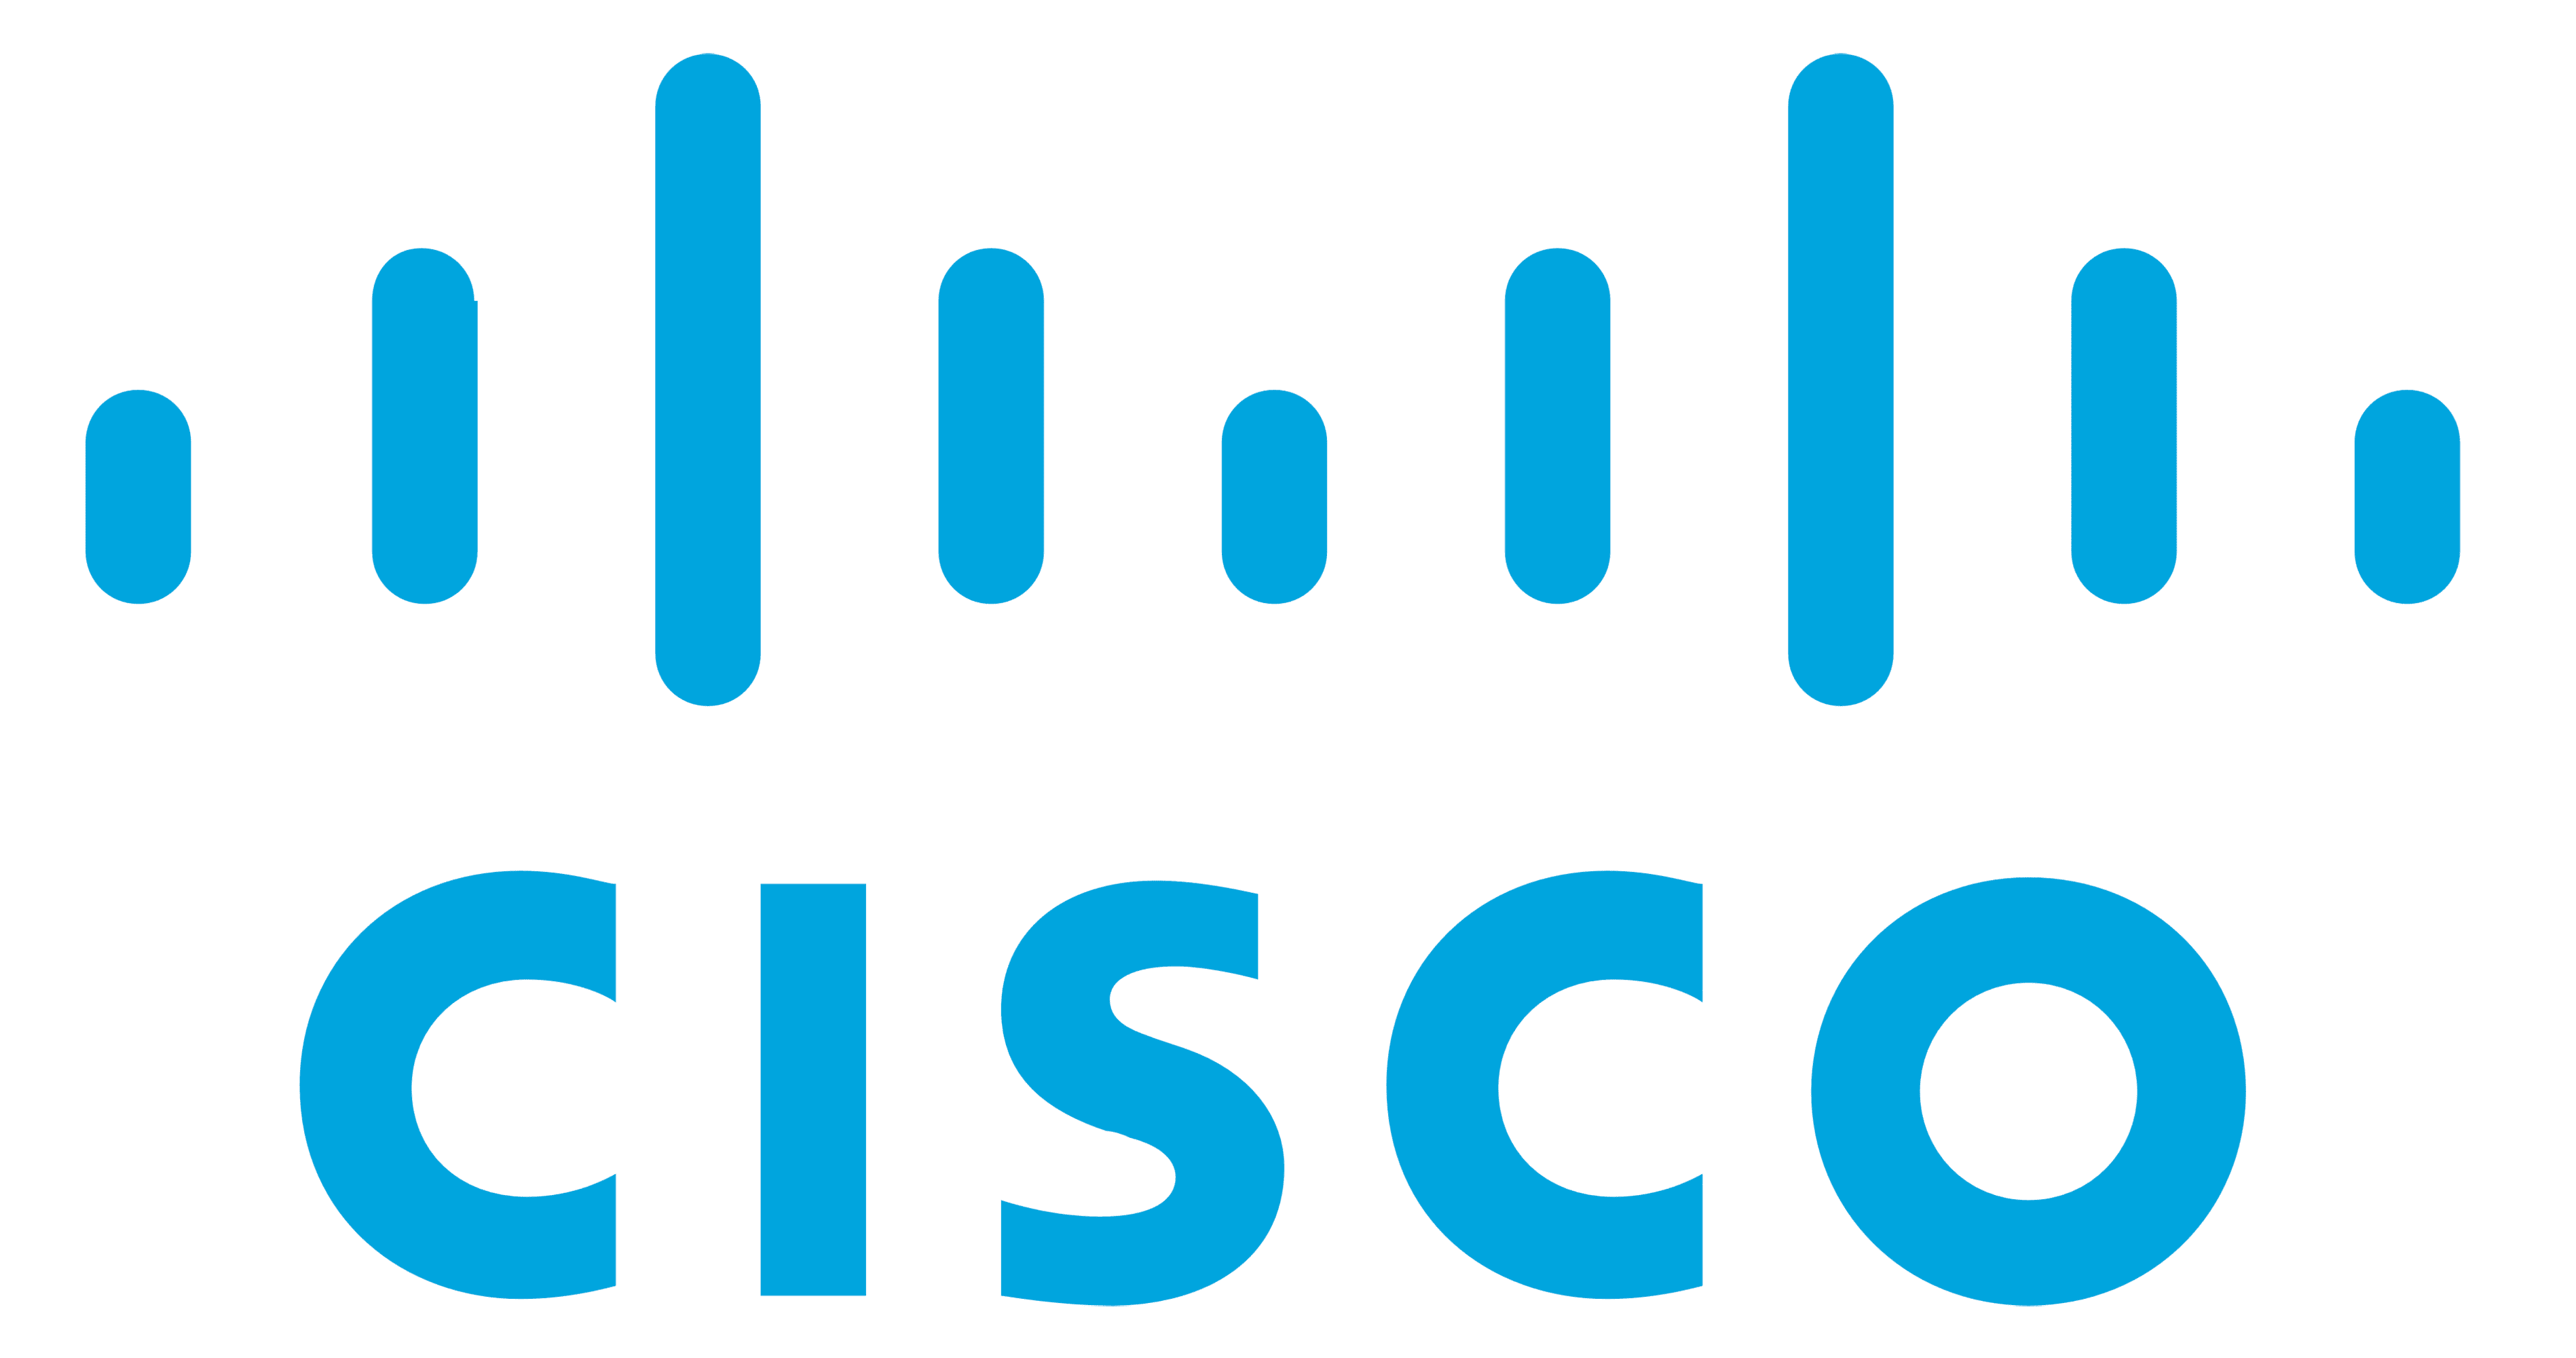 Cisco Menghapus Kira Aset Di Rusia Bernilai RM300 Juta